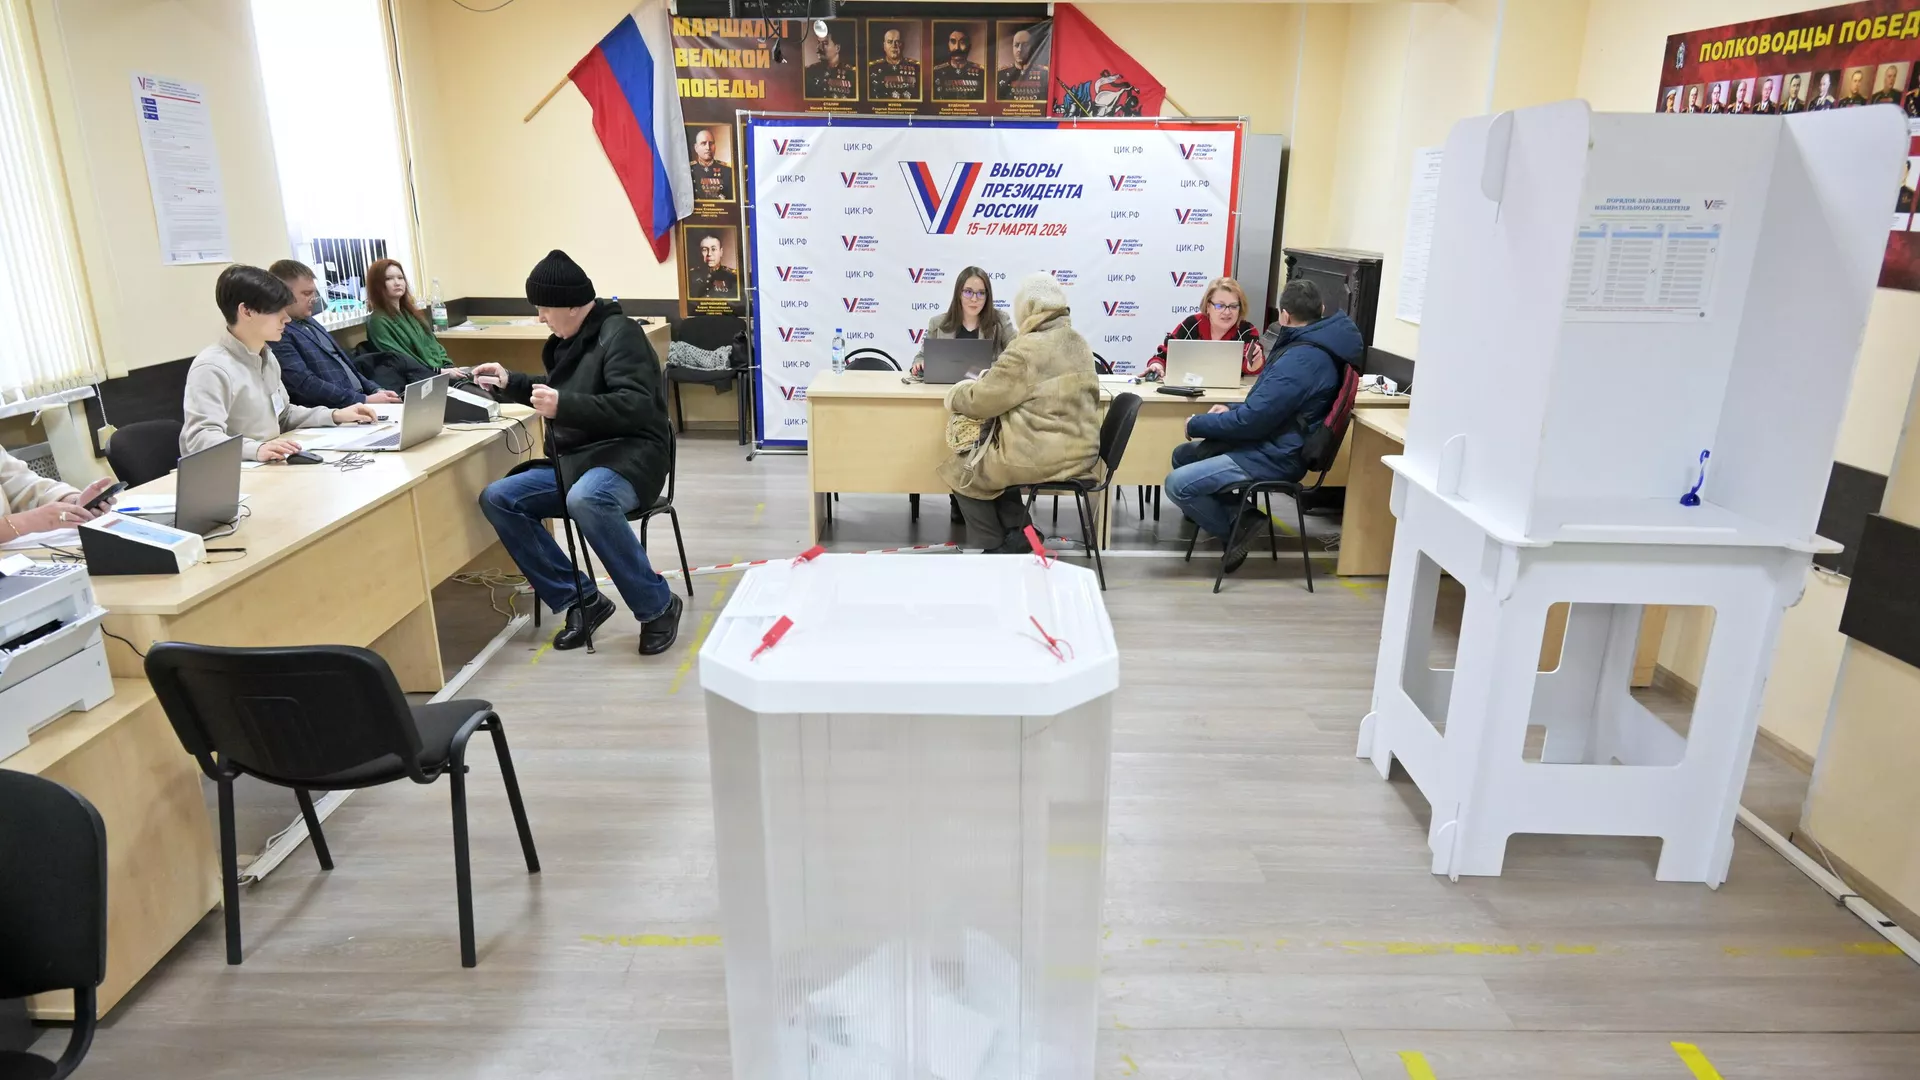 Մոսկվայի շրջանի ընտրատեղամասերում խախտումներ չեն արձանագրվել․ԱՊՀ առաքելություն